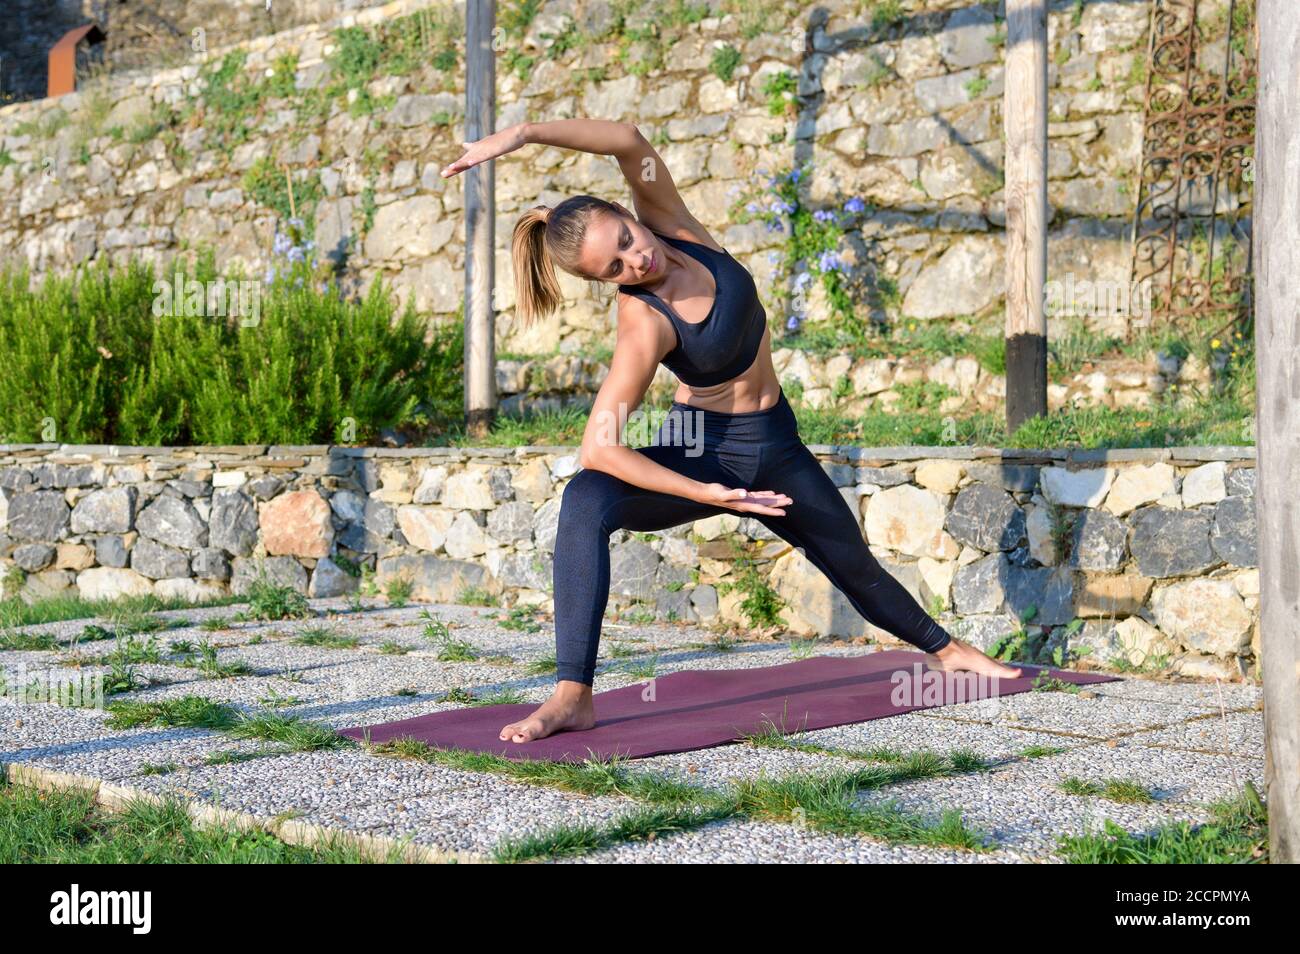 Ragazza che fa un lungo angolo di yoga posa come lei lavora all'aperto in giardino in una salute e. concetto di fitness stretching e tonificazione dei muscoli Foto Stock